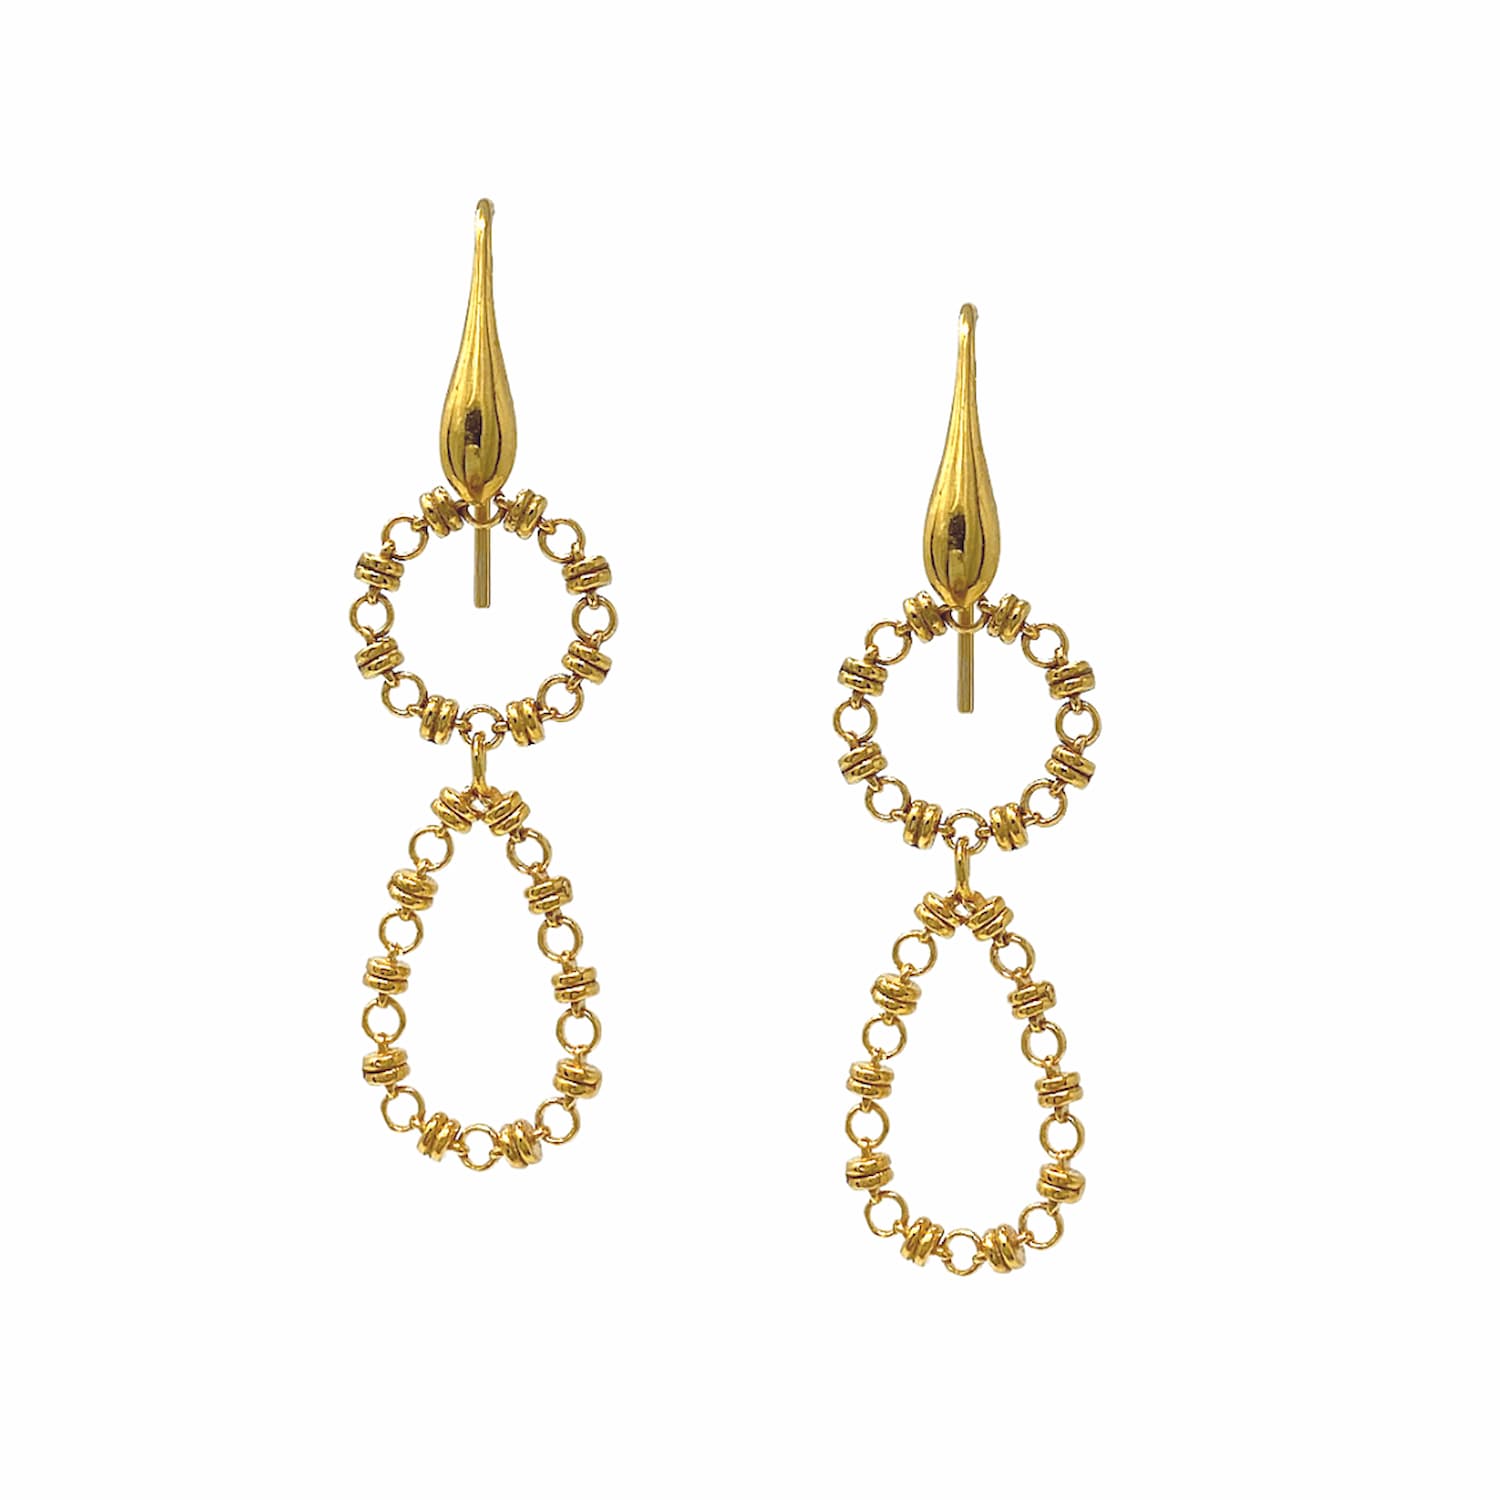 Botticelli Drops Earrings in Gold